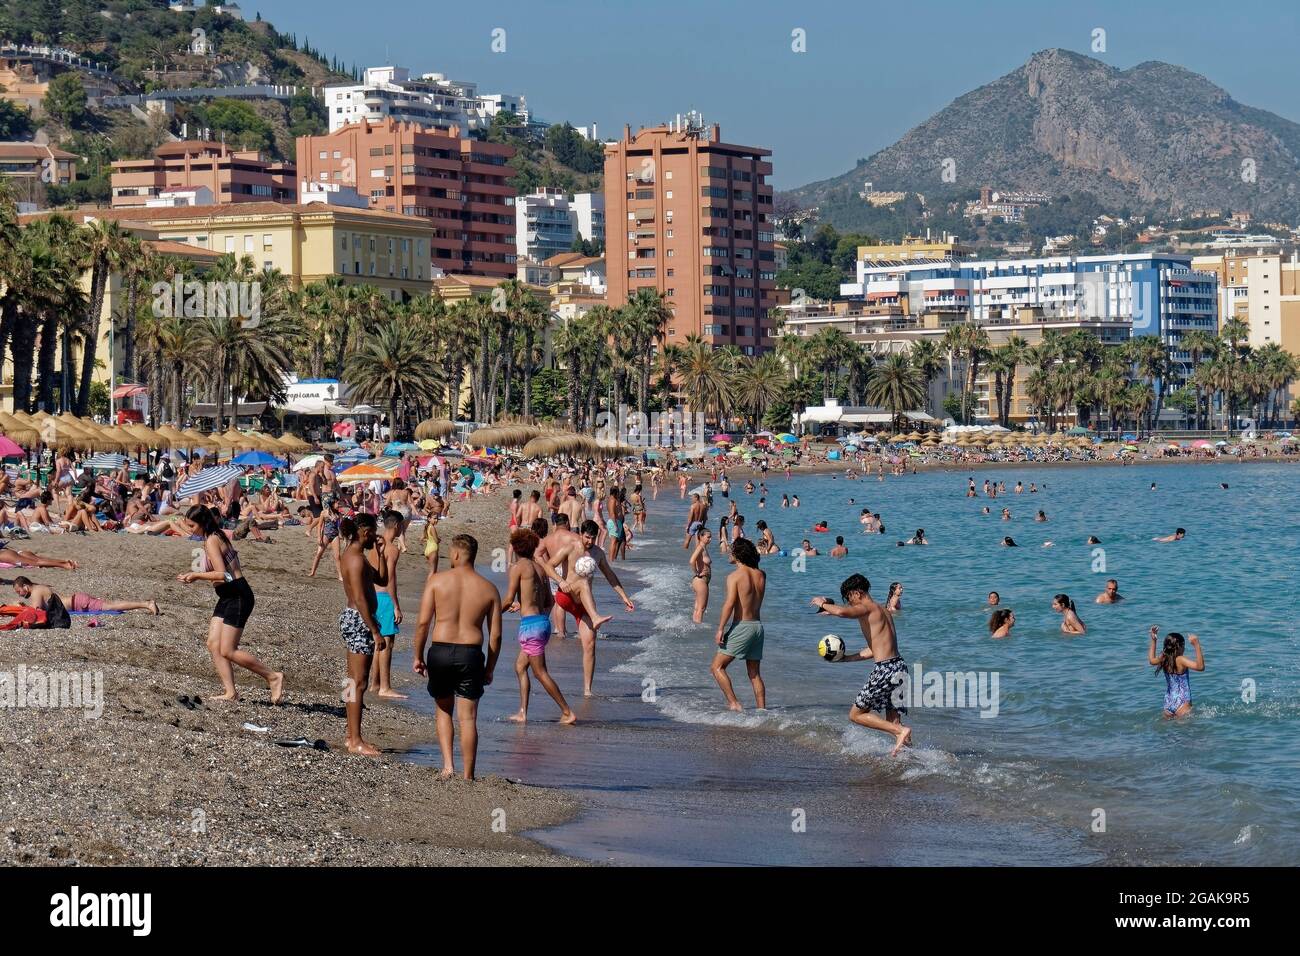 Sandstrand Malaga, Costa del Sol, Provinz Malaga, Andalusien, Spanien, Europa, Stock Photo